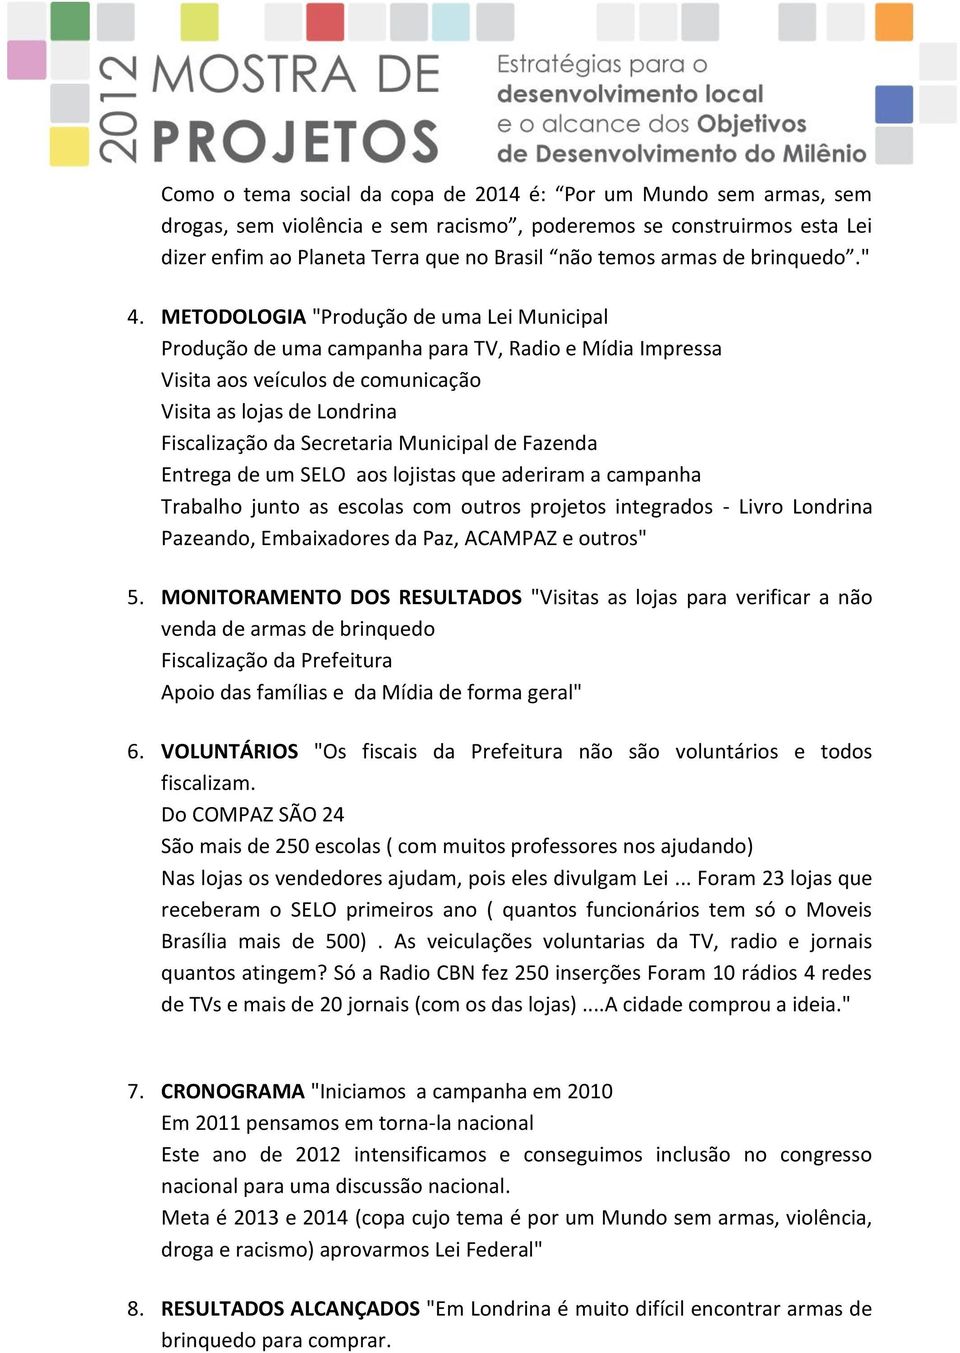 METODOLOGIA "Produção de uma Lei Municipal Produção de uma campanha para TV, Radio e Mídia Impressa Visita aos veículos de comunicação Visita as lojas de Londrina Fiscalização da Secretaria Municipal